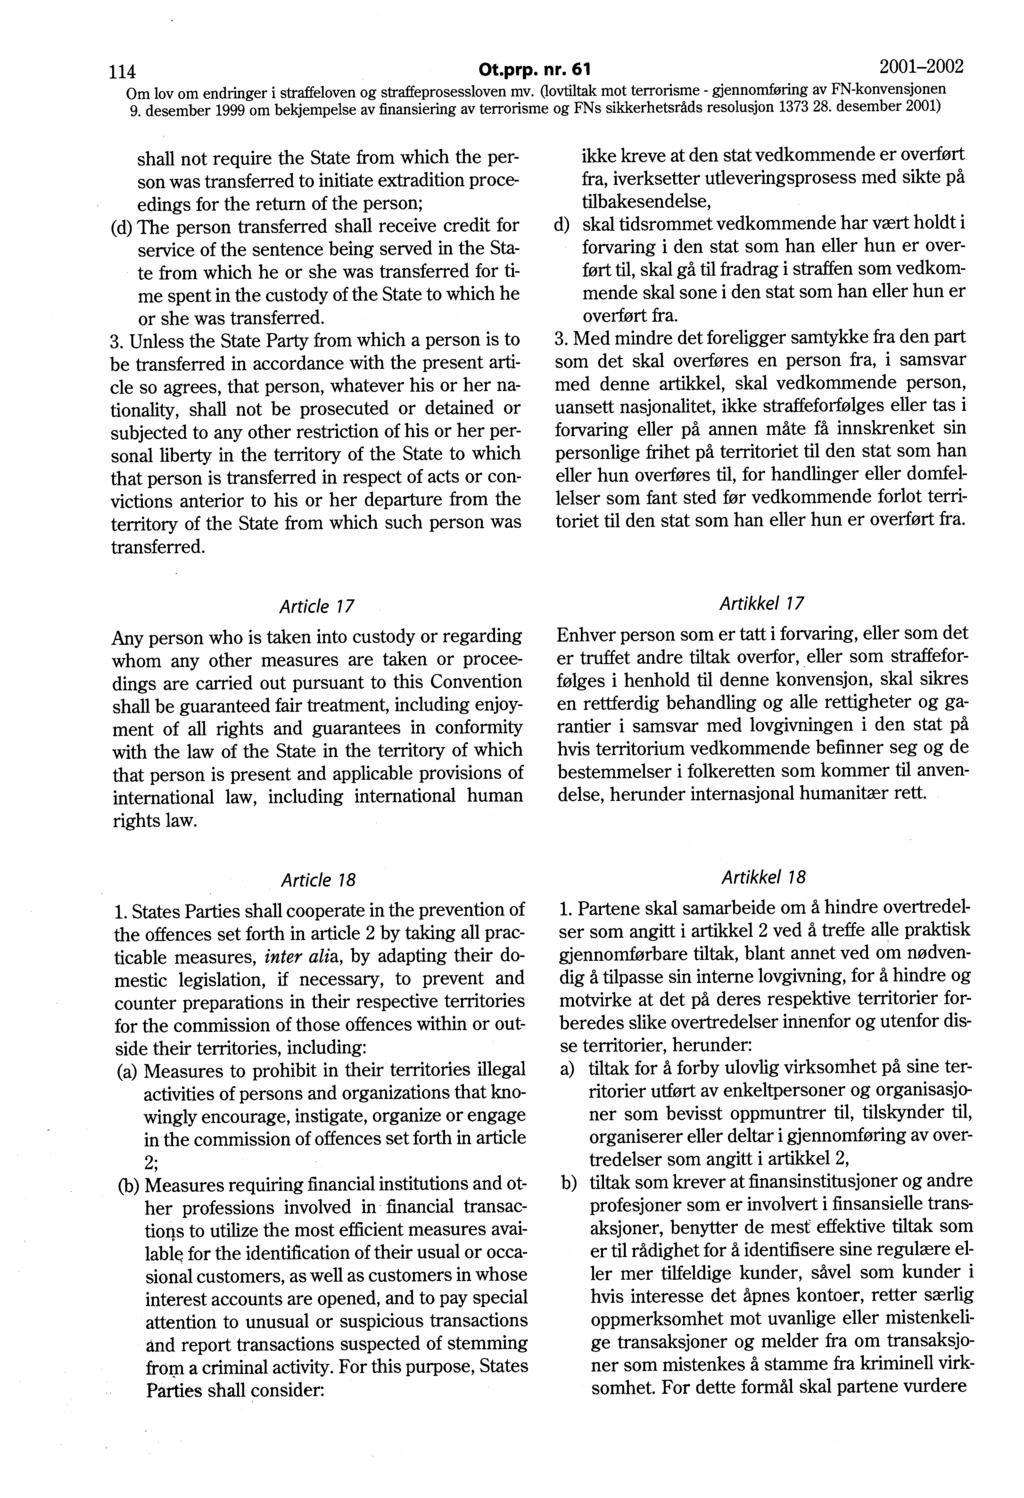 114 Ot.prp. nr. 61 2001-2002 Om lov om endringer i straffeloven og straffeprosessloven mv.